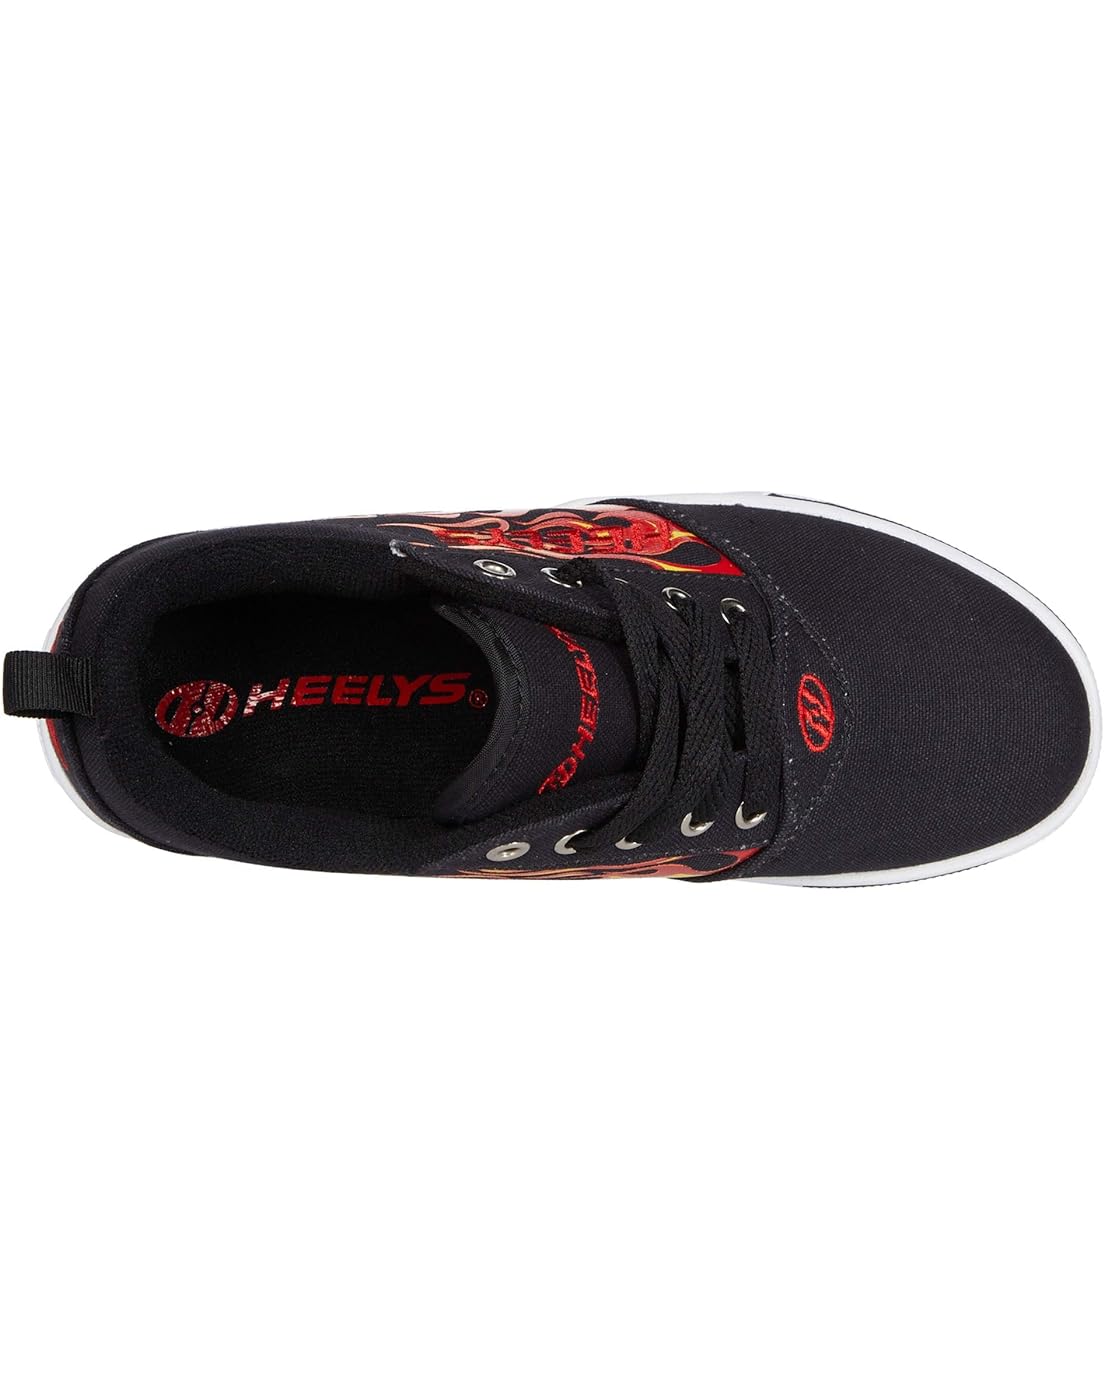  Heelys Pro 20 Prints Skate Shoe (Little Kid/Big Kid/Adult)